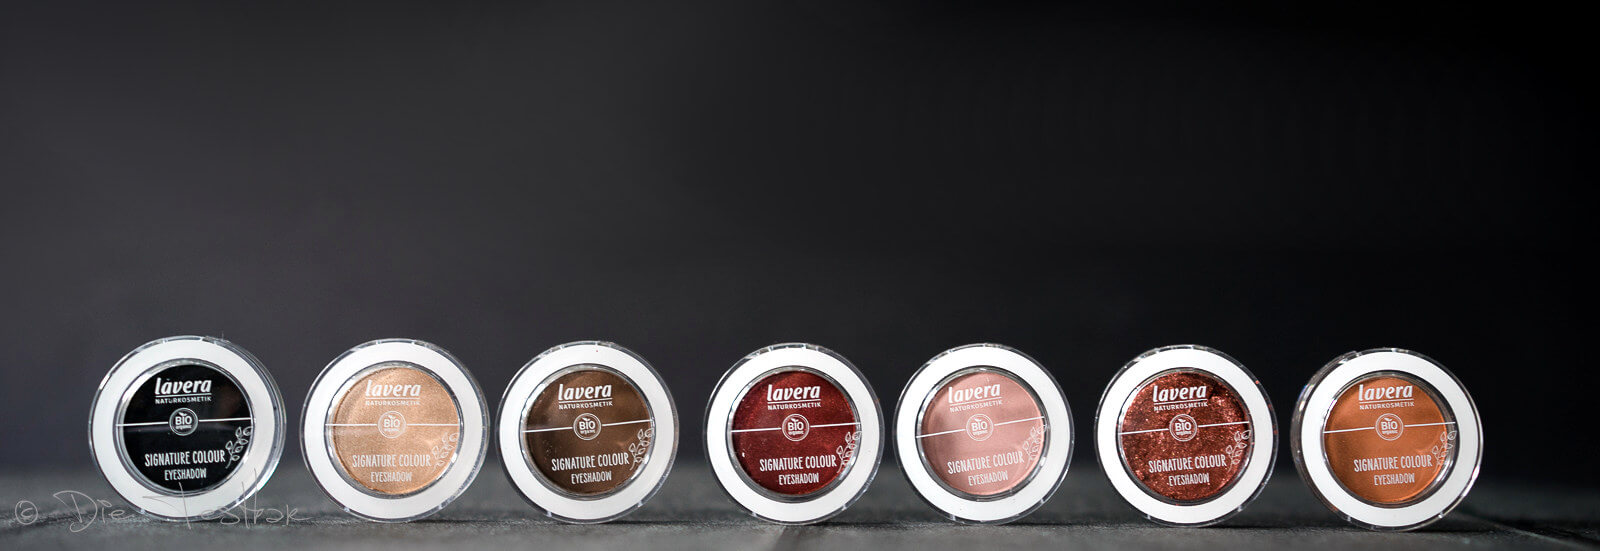 lavera - Dekorative Kosmetik - Neu im Sortiment - Bronzer, Rouge, Grundierung und Eyeshadows 31